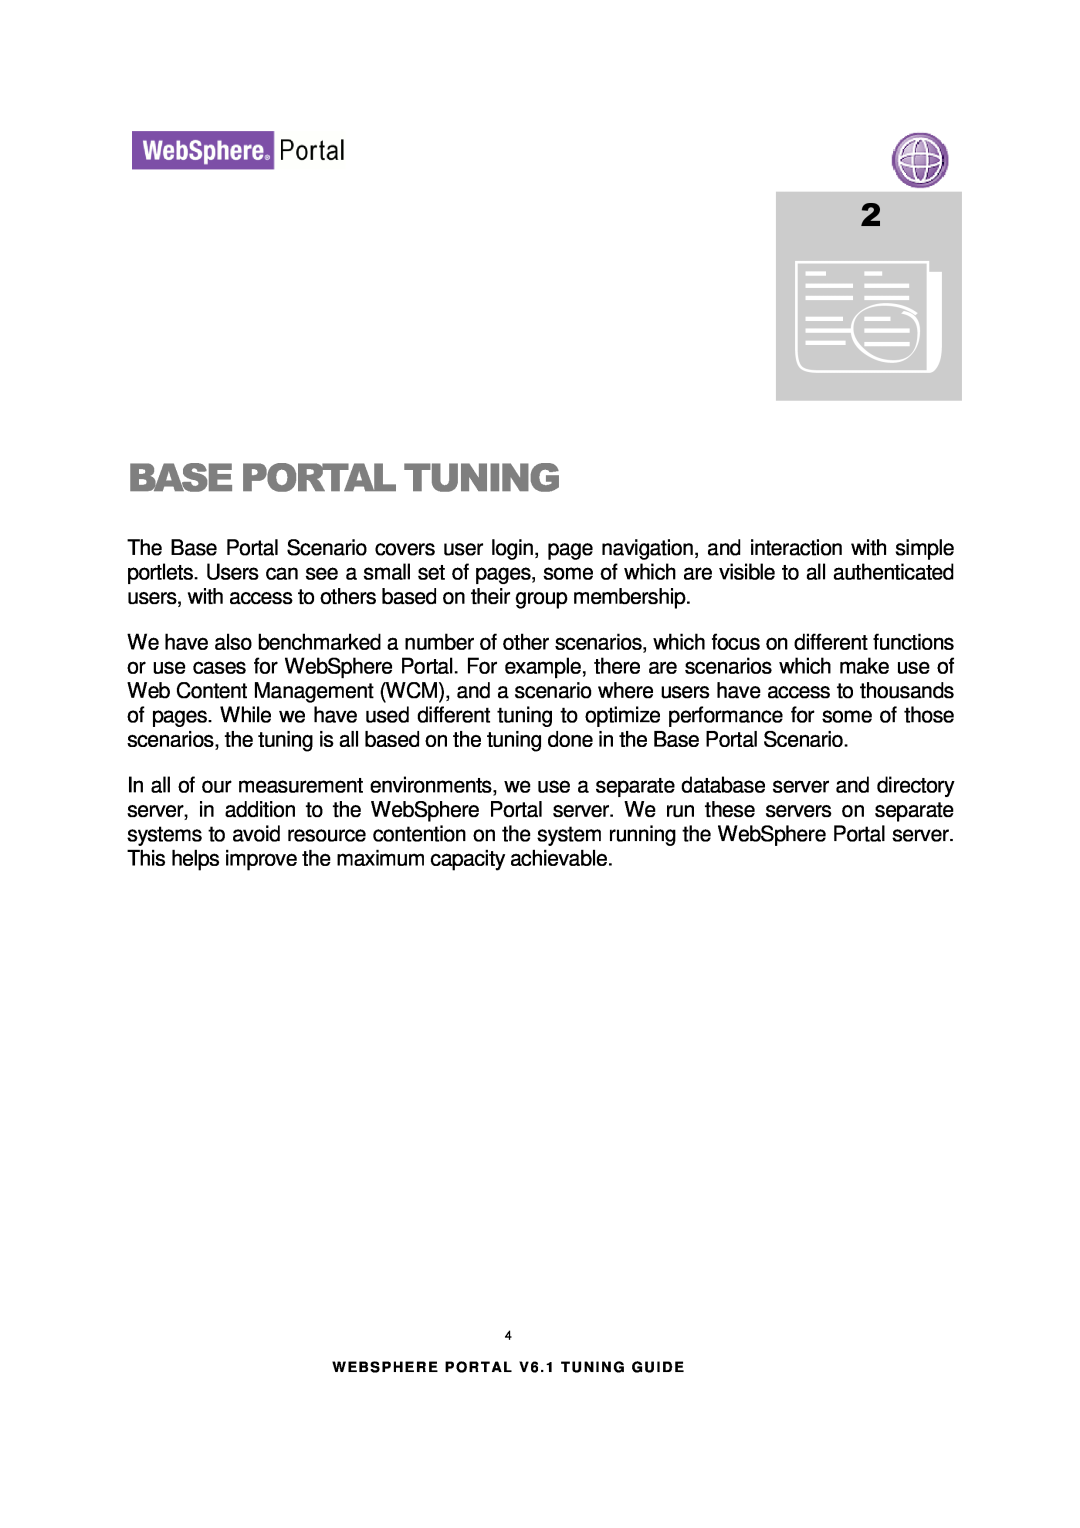 IBM 6.1.X manual Base Portal Tuning 